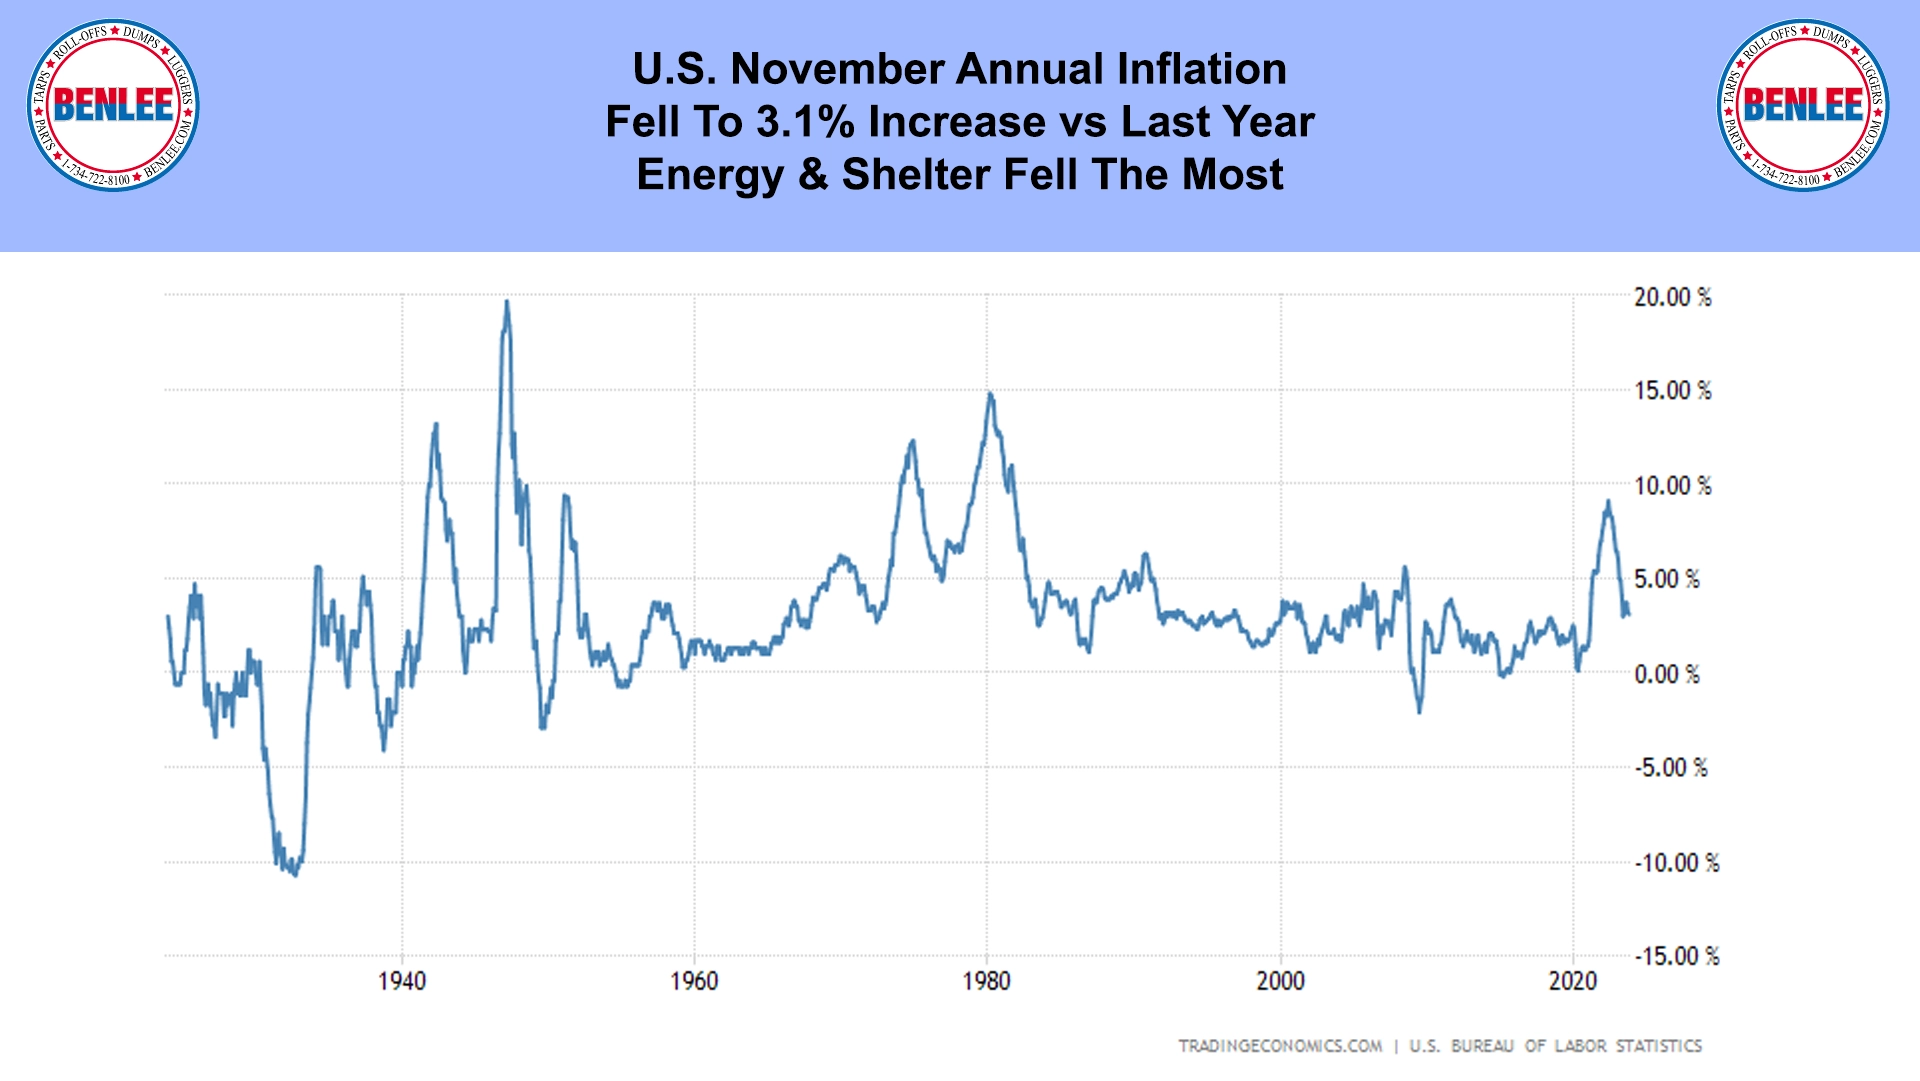 U.S. November Annual Inflation